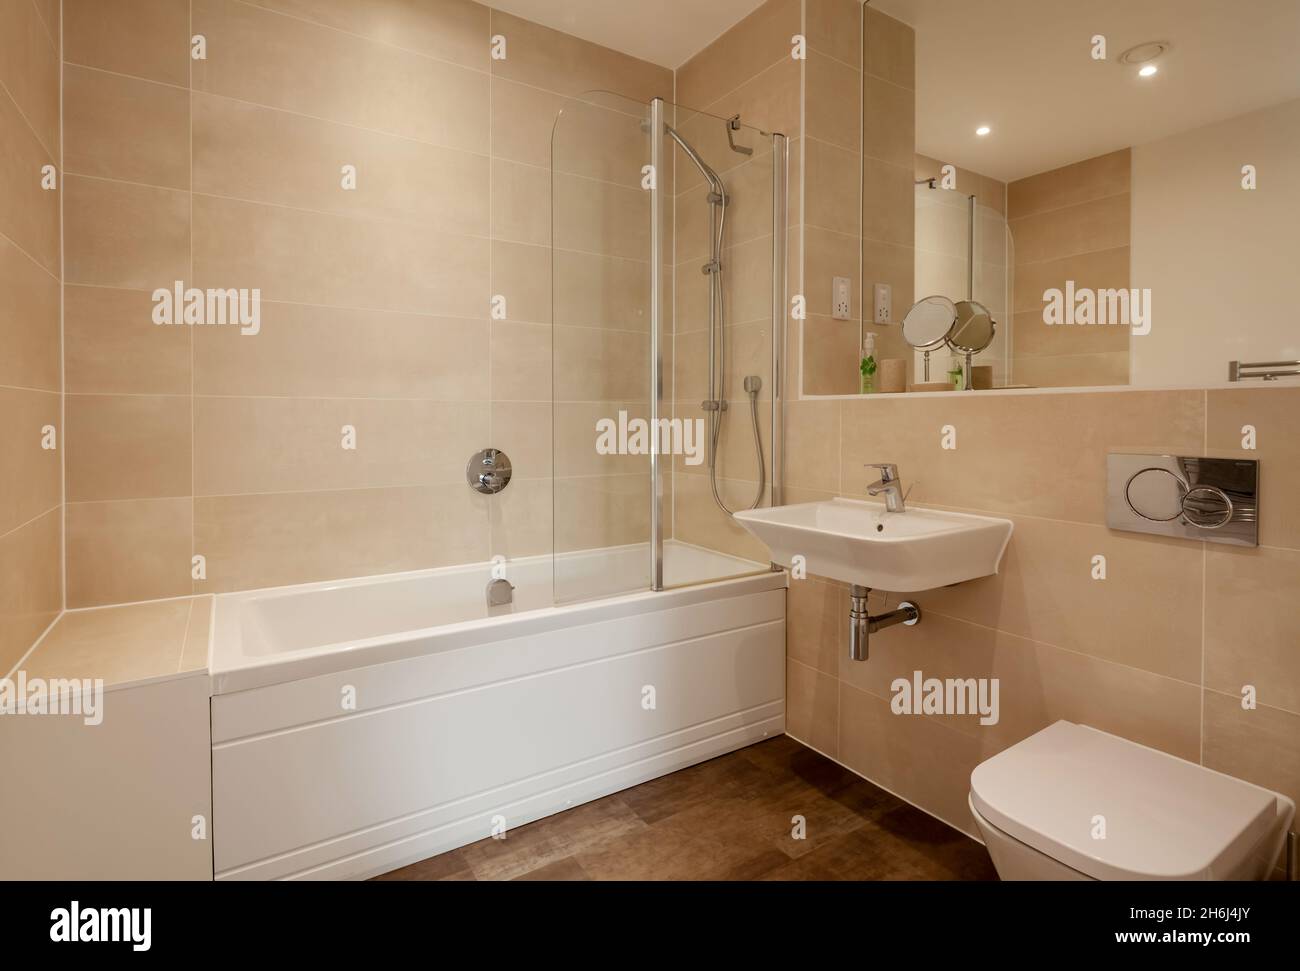 Cambridge, Angleterre - août 6 2019 : salle de bains/douche moderne partiellement carrelée avec lavabo en céramique mural, baignoire et grand miroir Banque D'Images